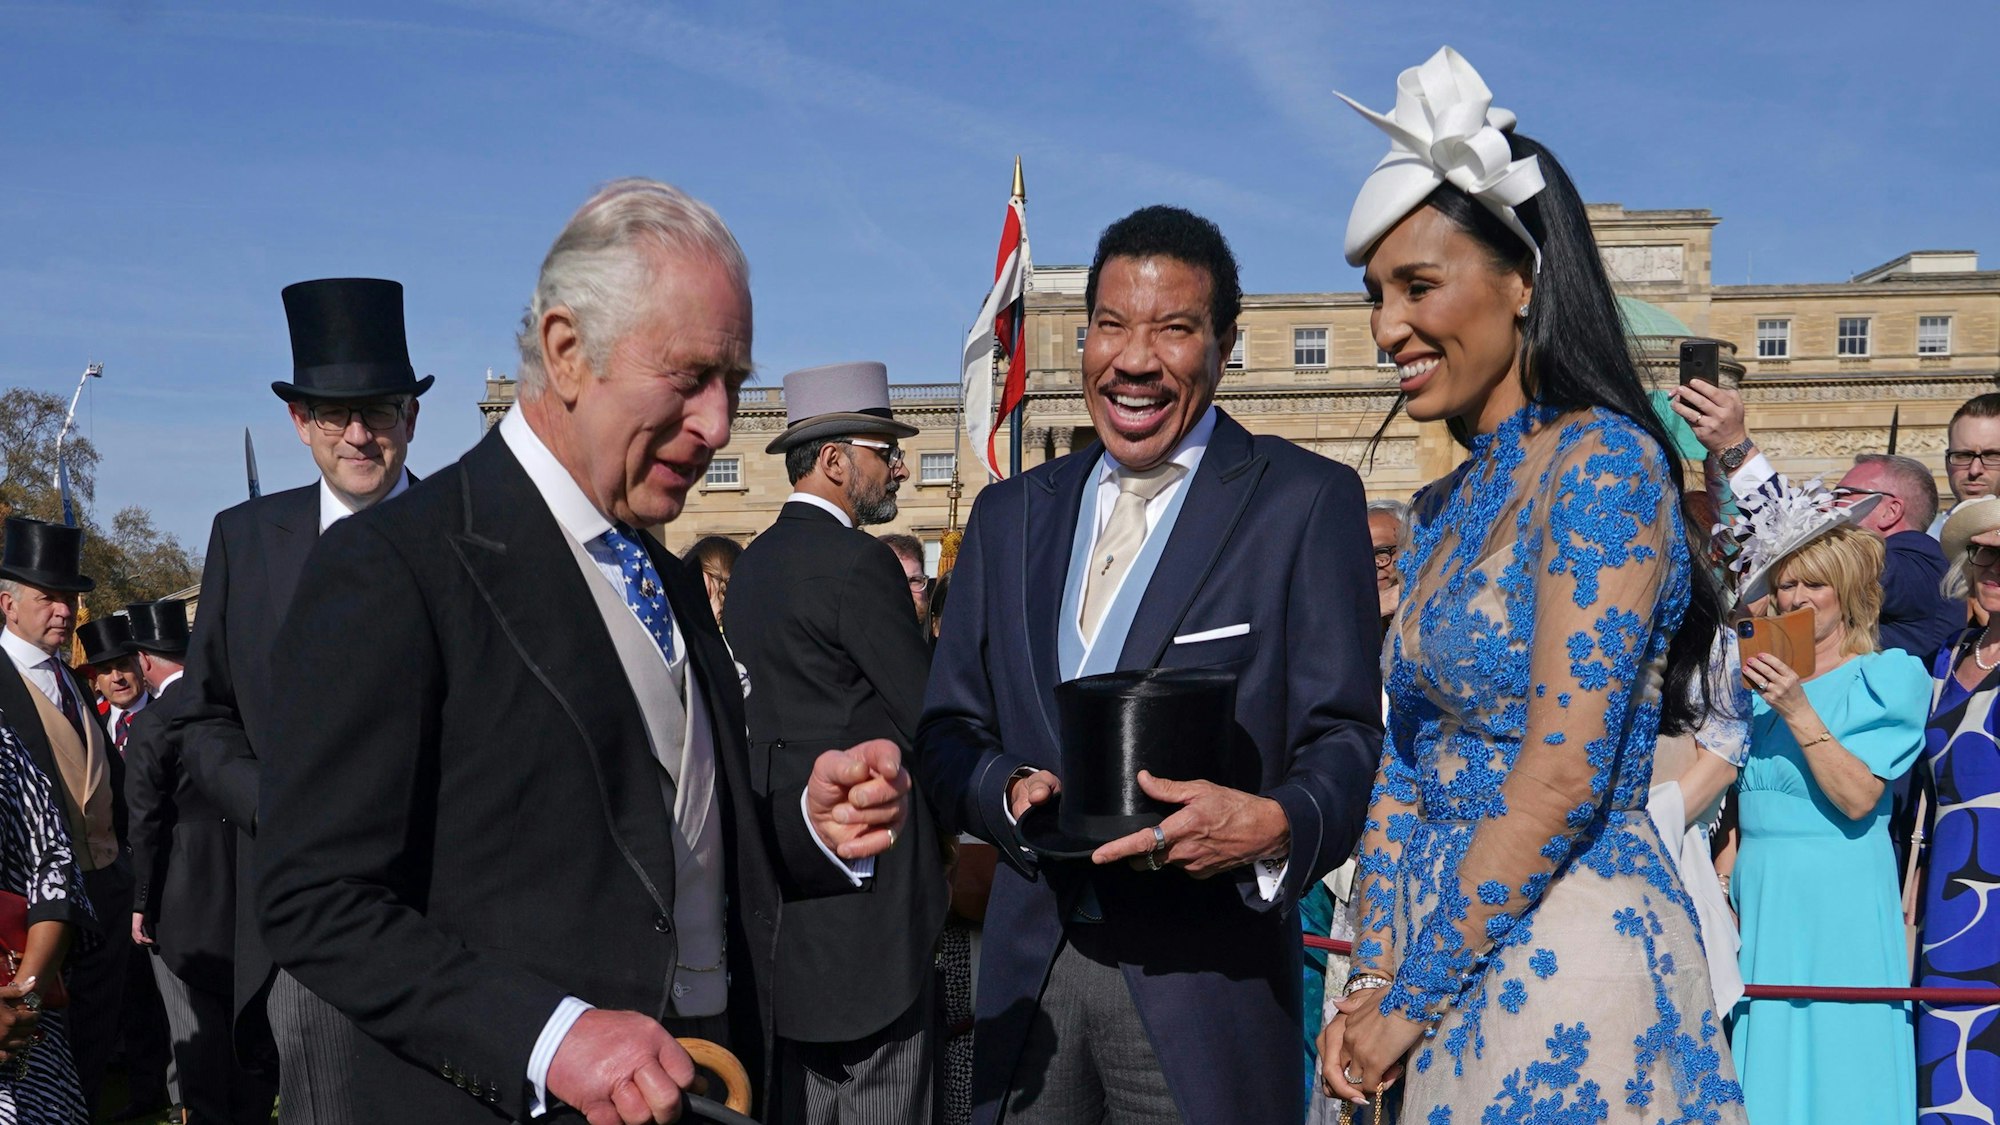 König Charles III. (l.) mit Lionel Richie und Lisa Parigi bei der Gartenparty im Buckingham Palast.